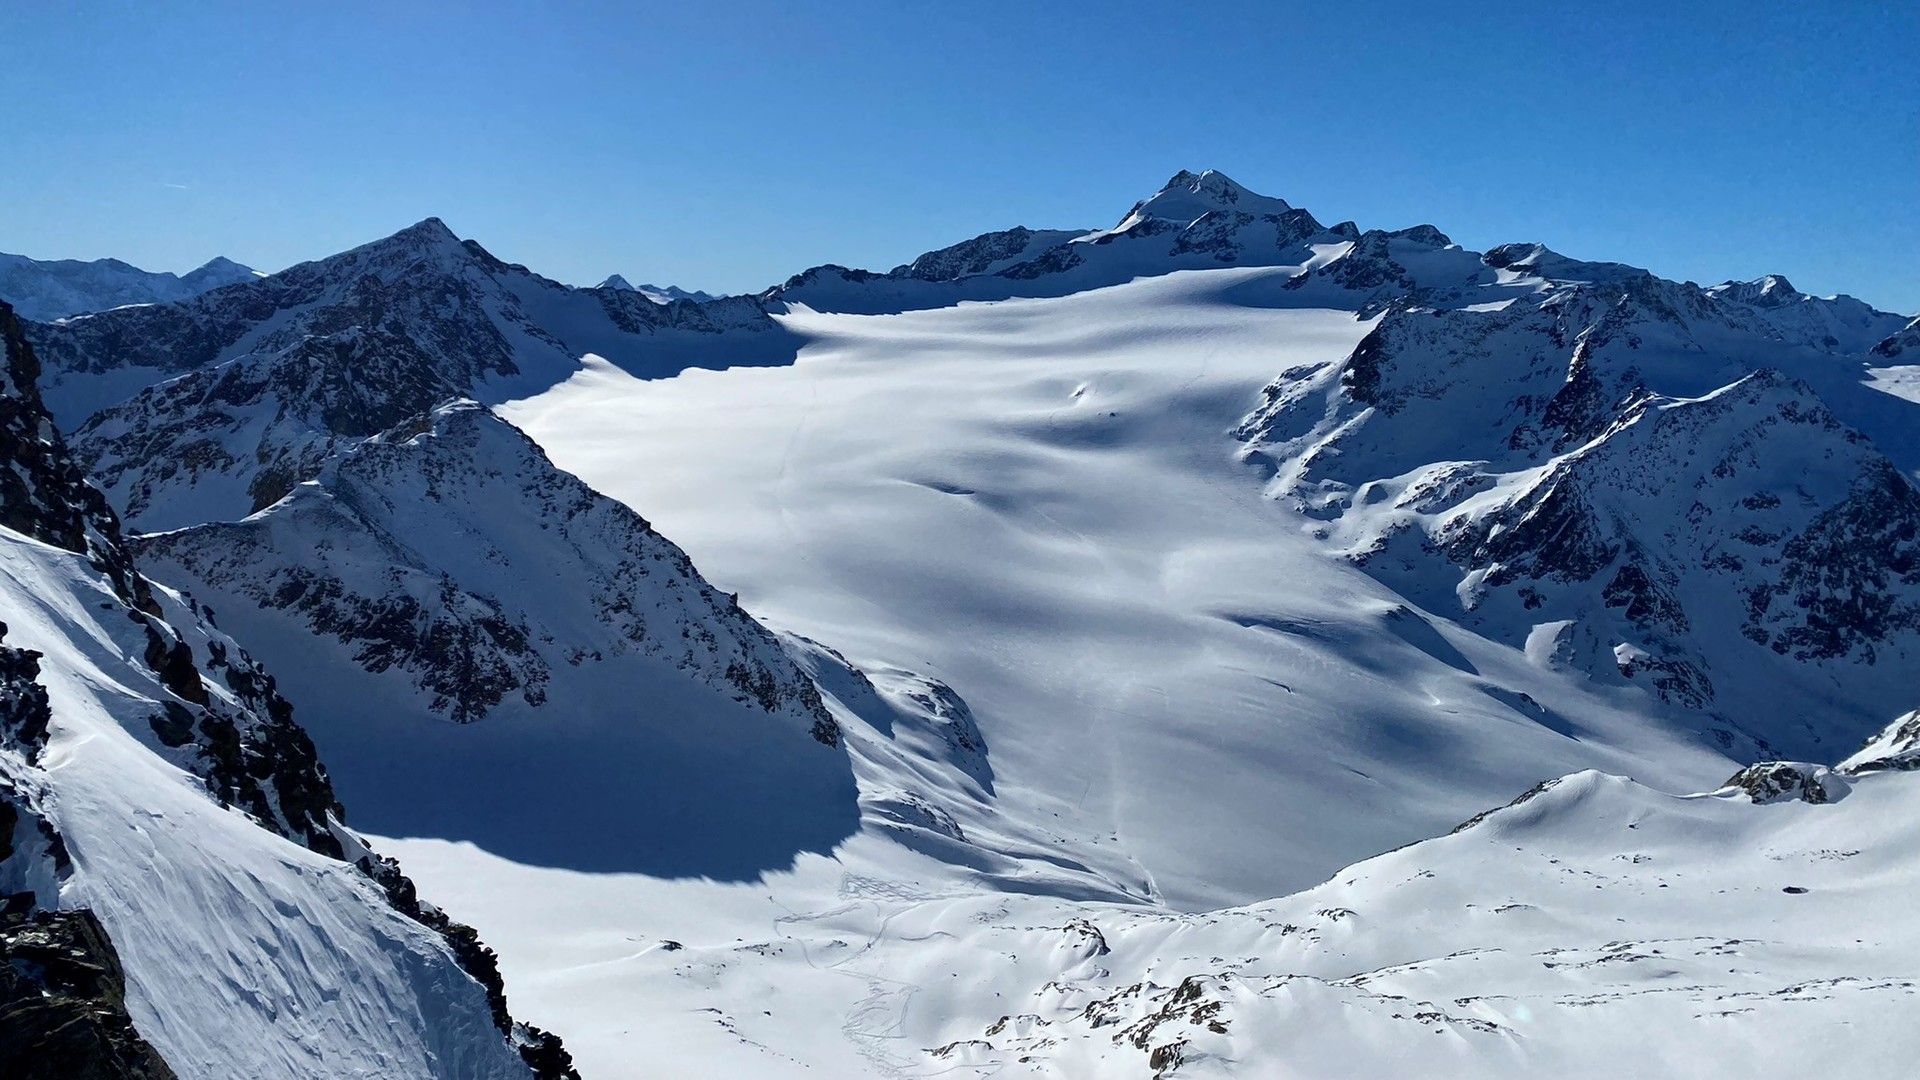 Panorama en Tiefenbachkogl, dominado por el imponente Wildspitze, pico más alto de la región del Tirol, con su inmenso glaciar a sus pies. 